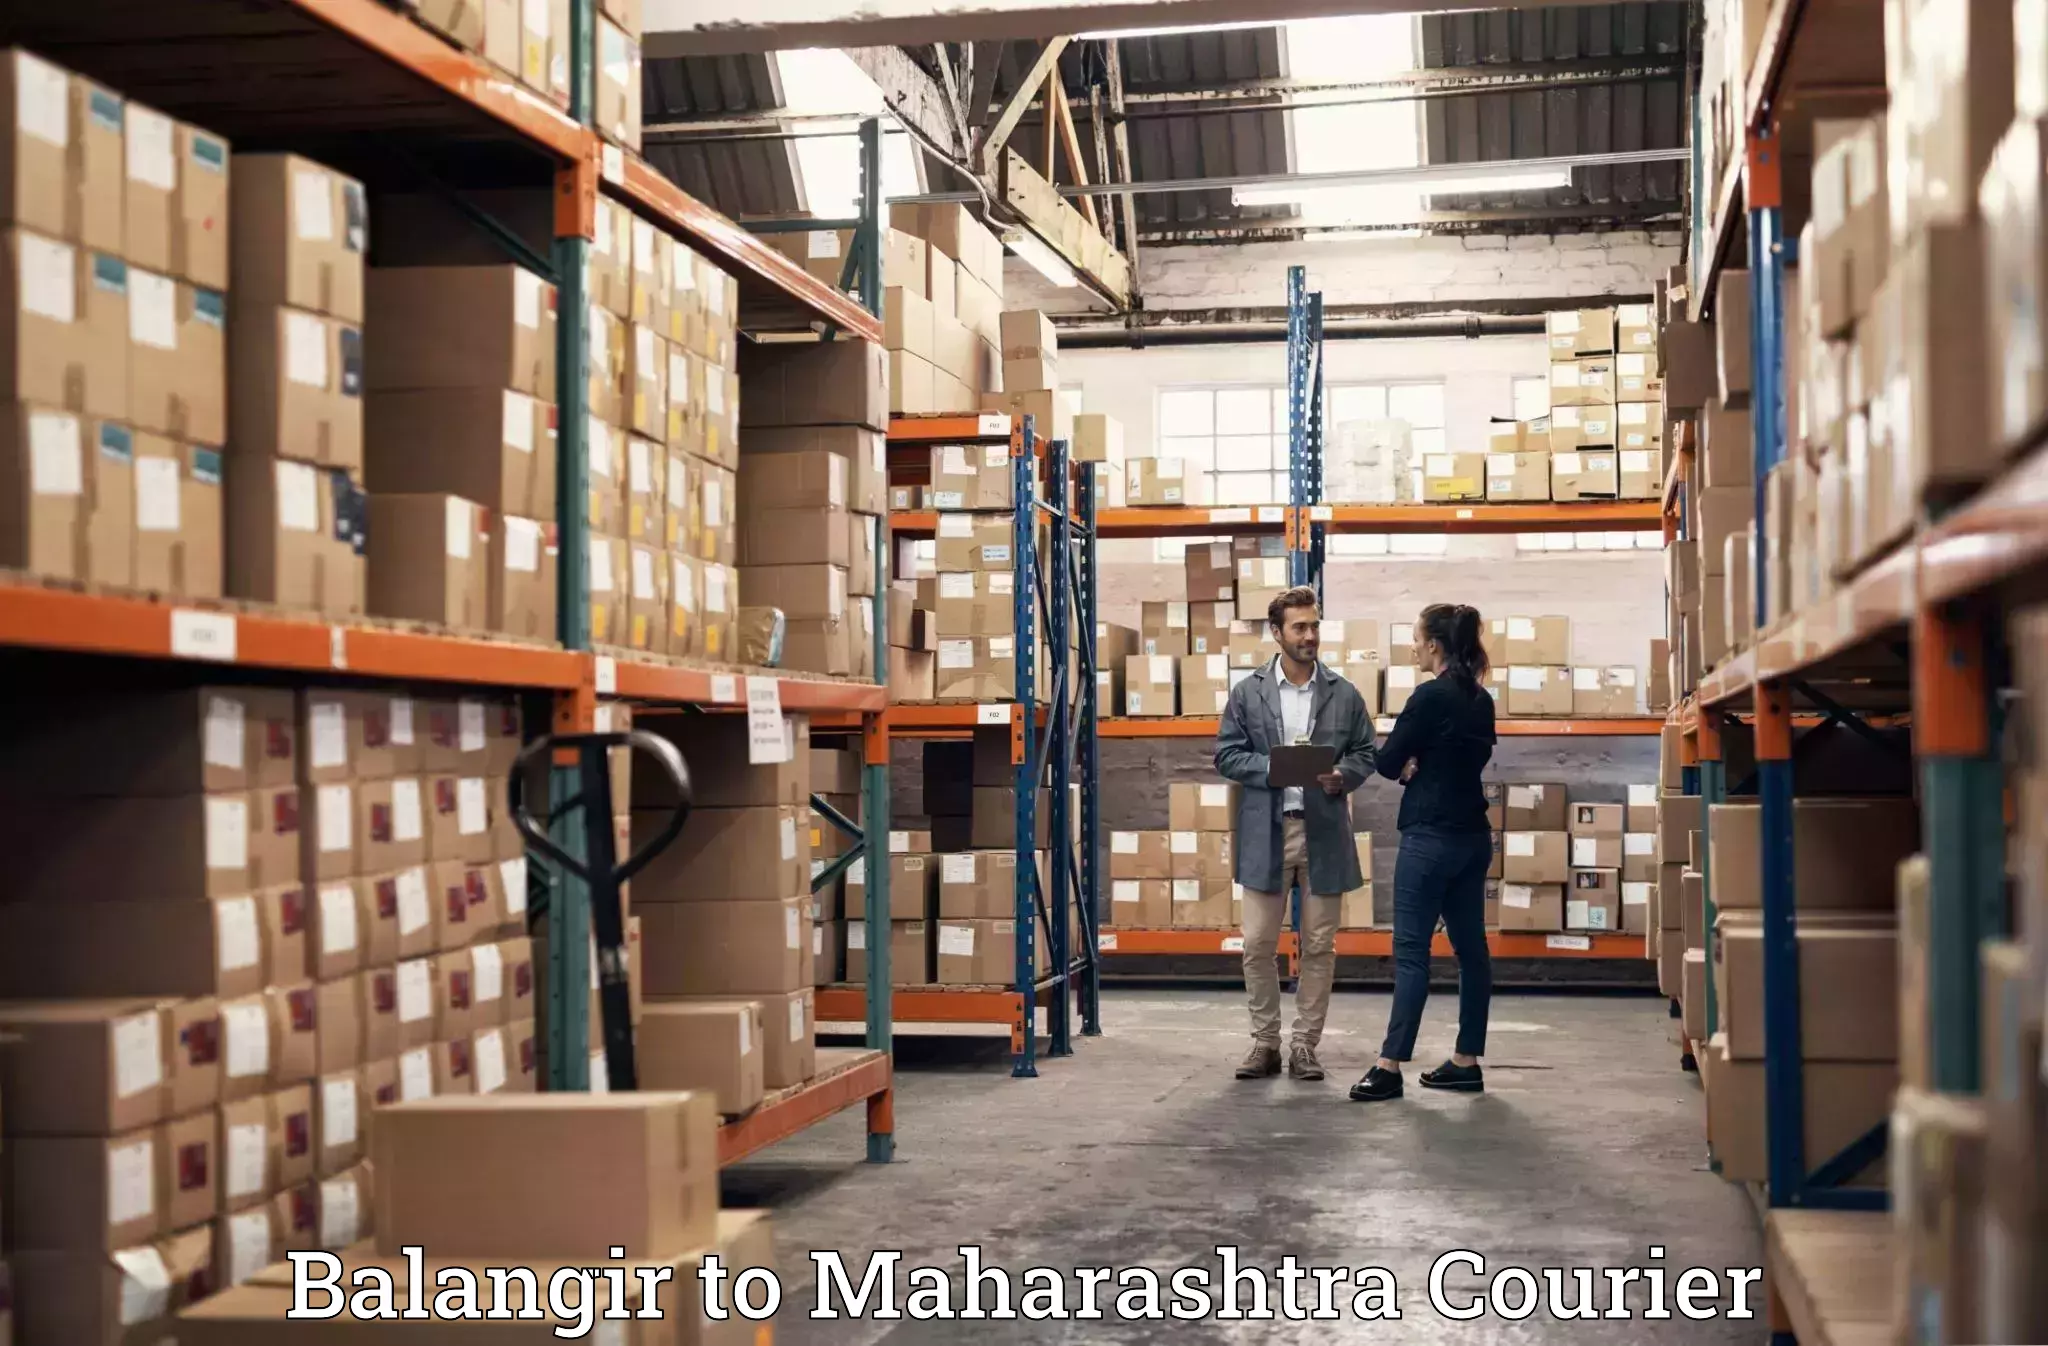 Furniture relocation experts Balangir to Mumbai